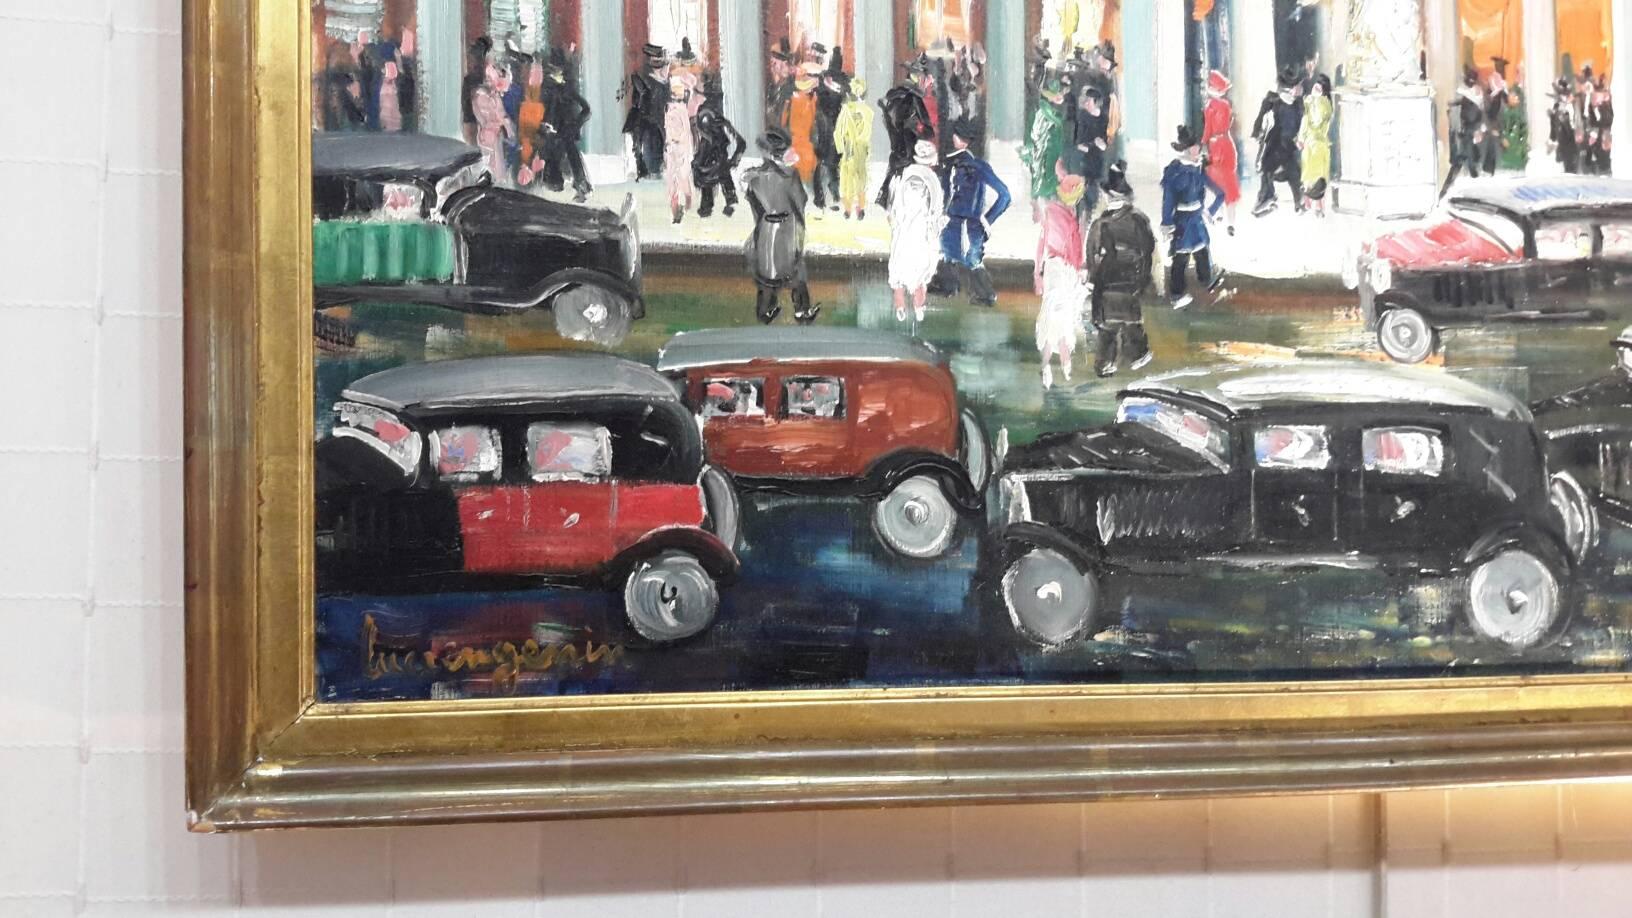 Palais Royal  Paris 1930's - Post-Impressionist Painting by Lucien Génin